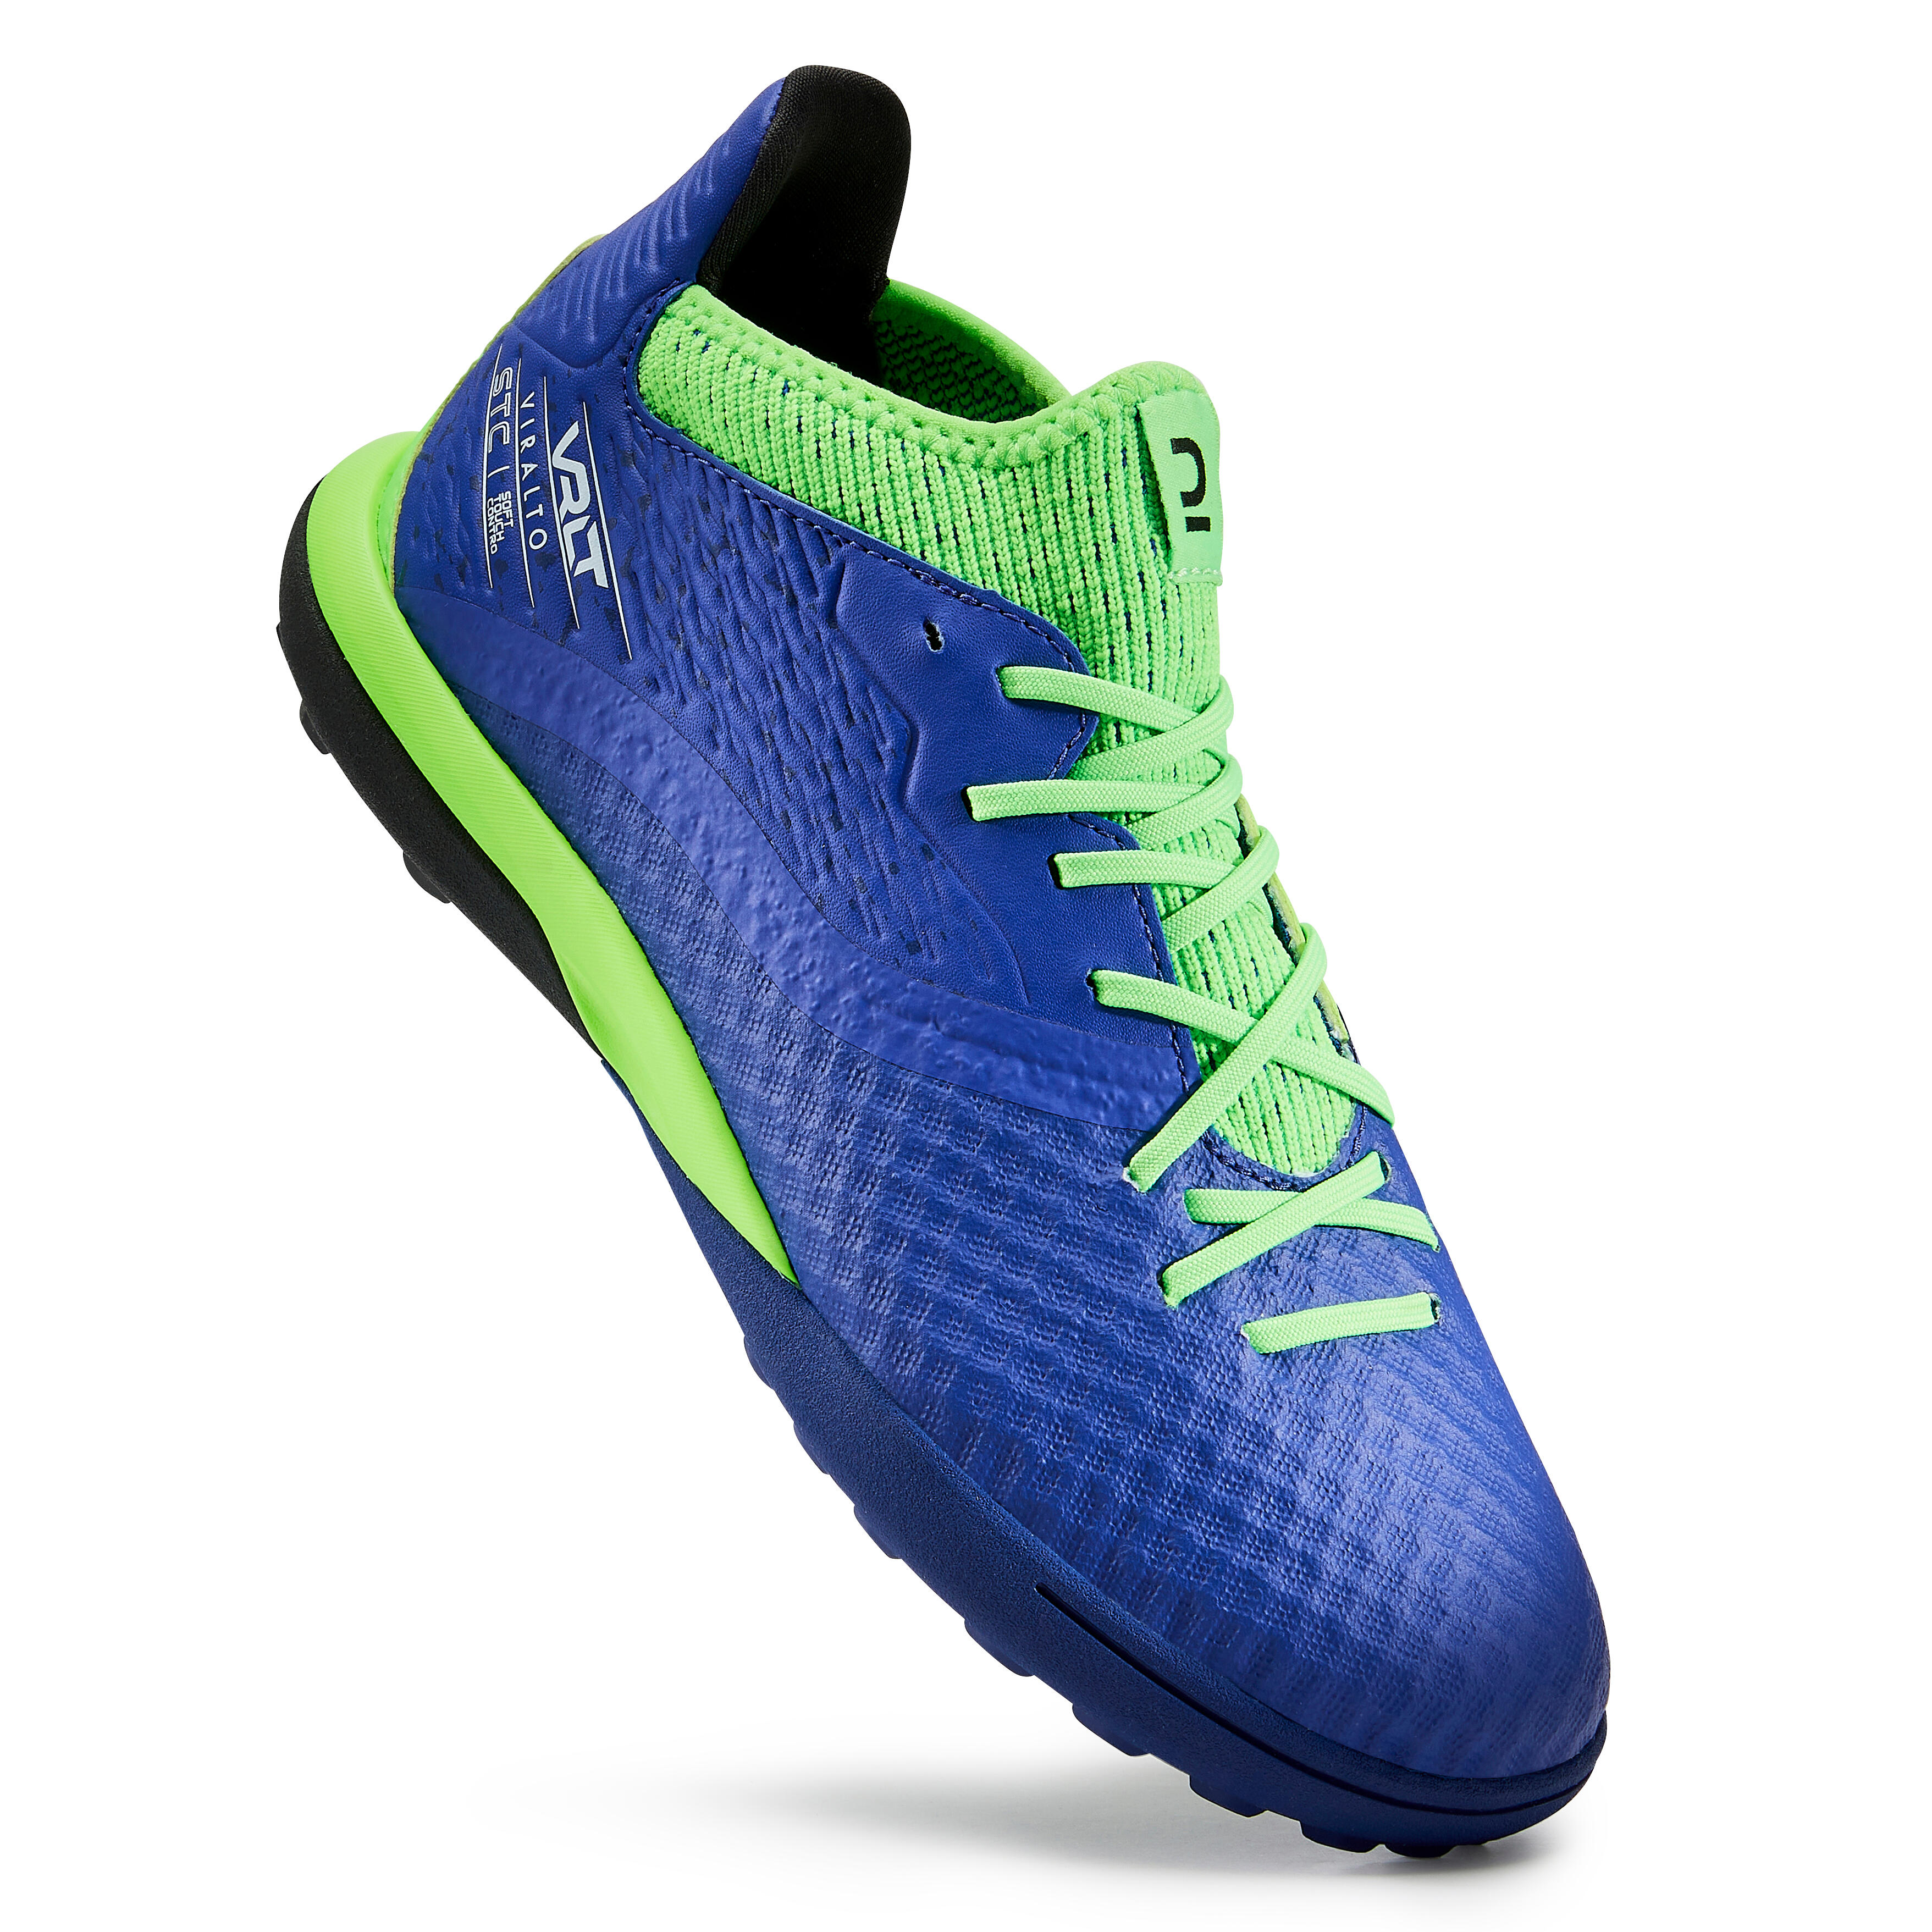 Chaussures de soccer pour terrain dur enfant - Viralto III TF bleu/vert - KIPSTA